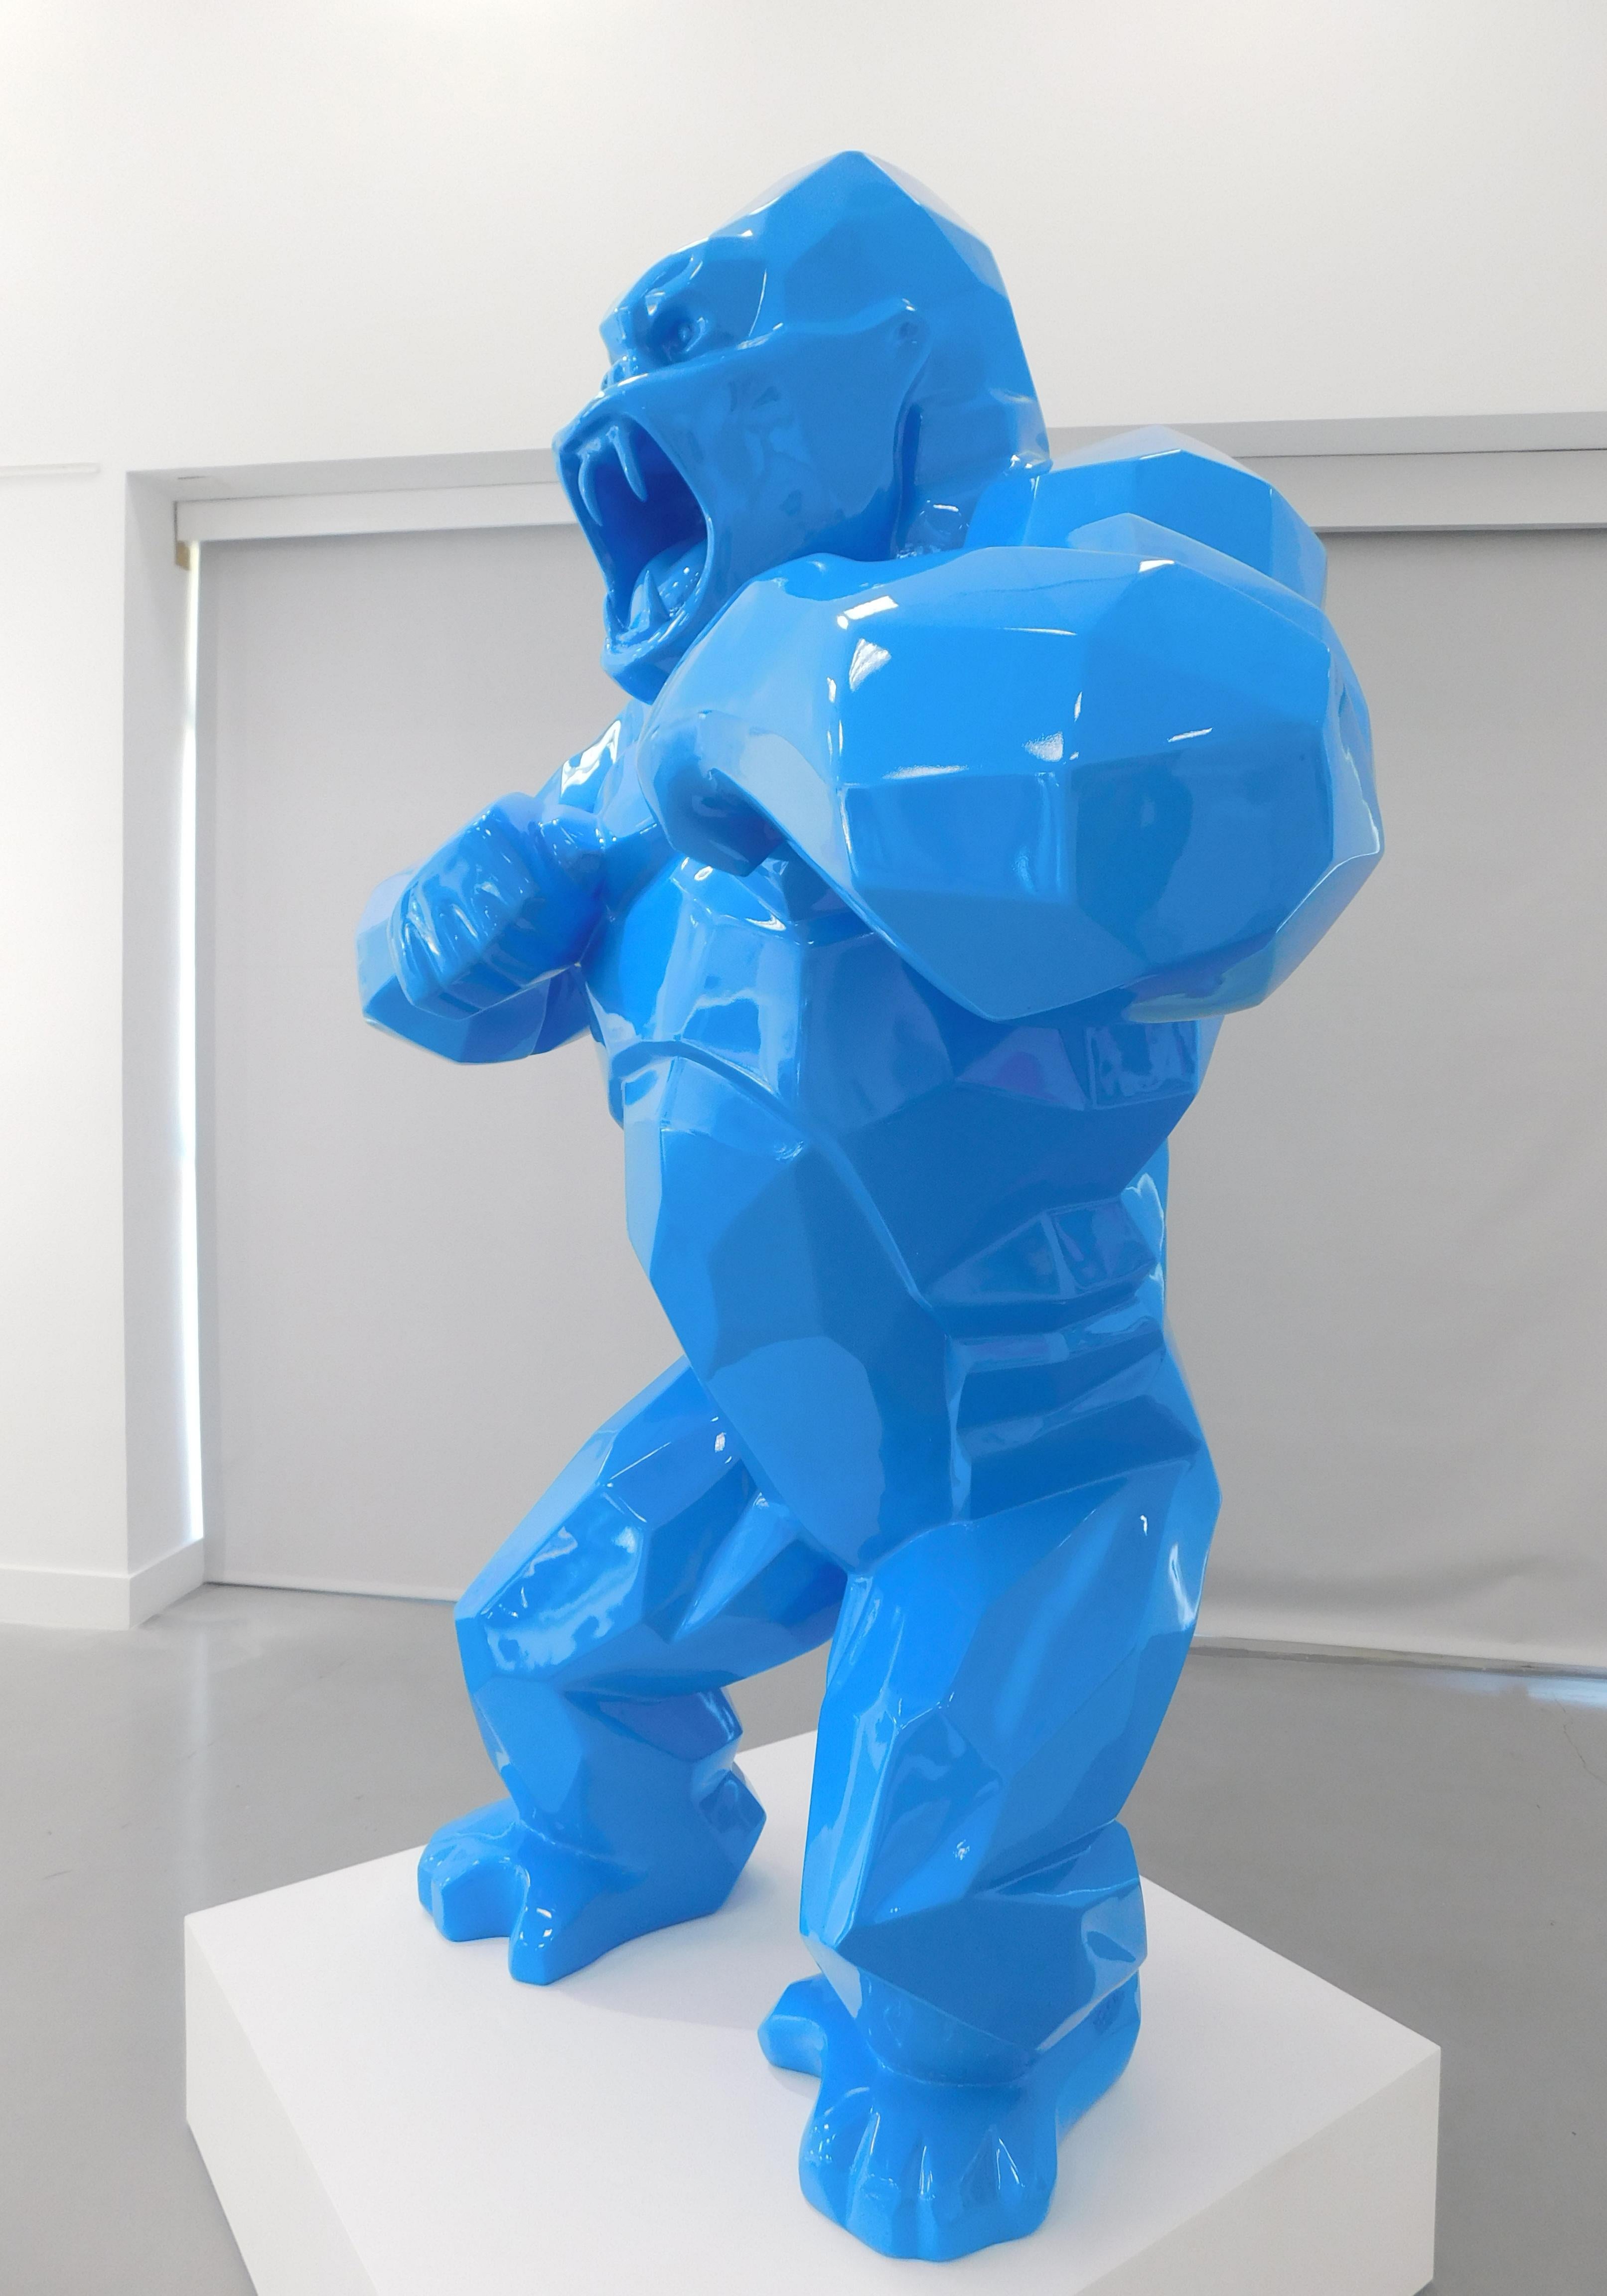 Wild Kong - Twitter Blue - Contemporary Sculpture by Richard Orlinski